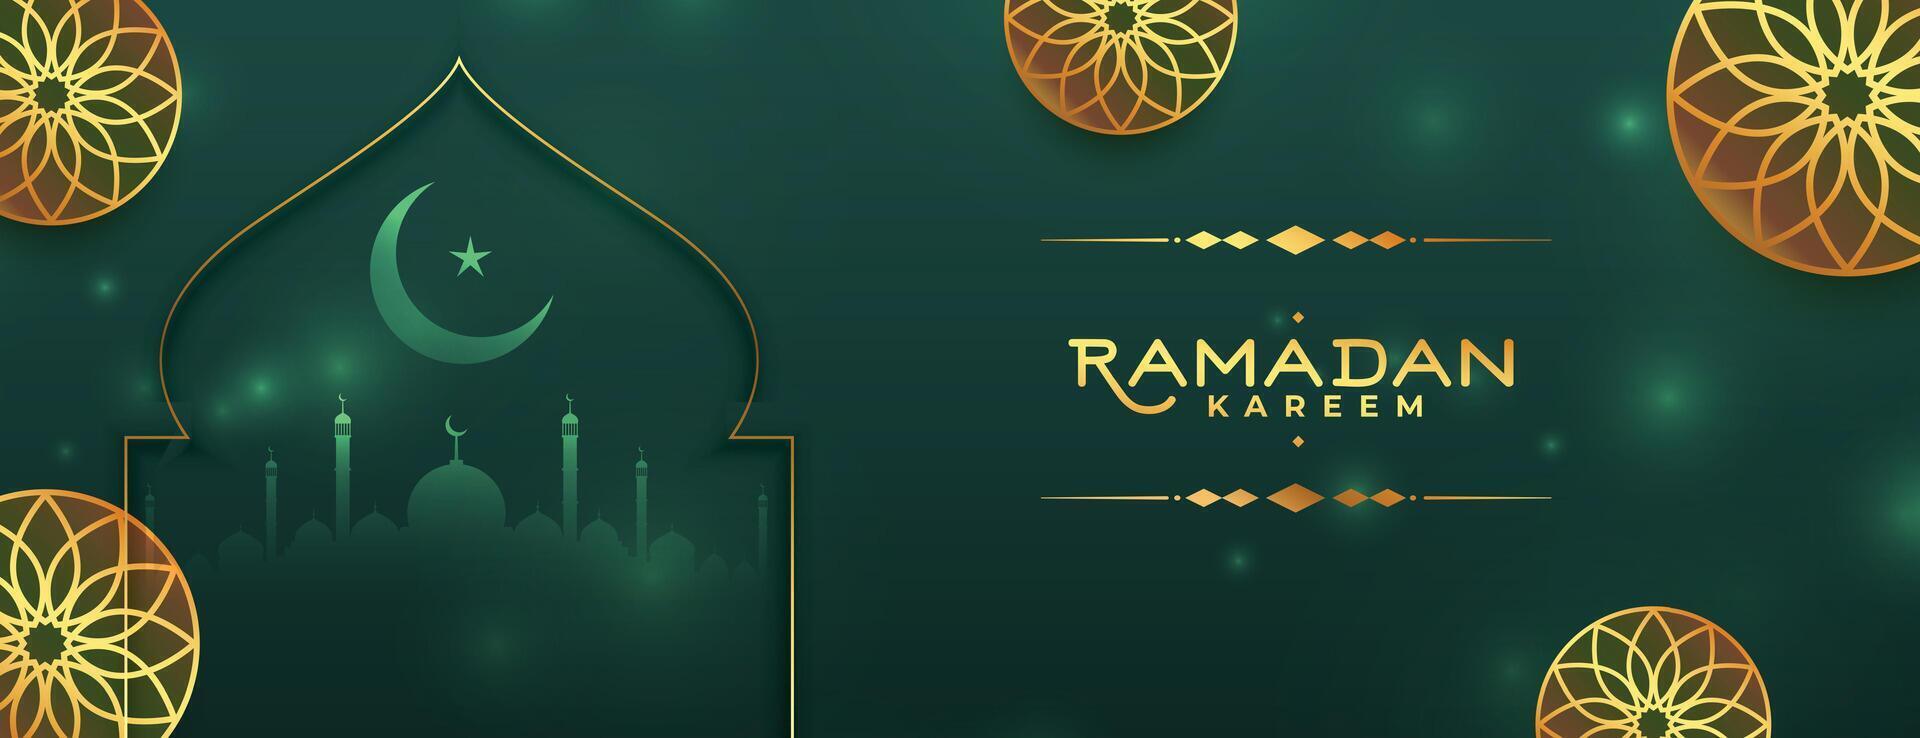 islâmico Ramadã kareem decorativo bandeira bênção cumprimento vetor